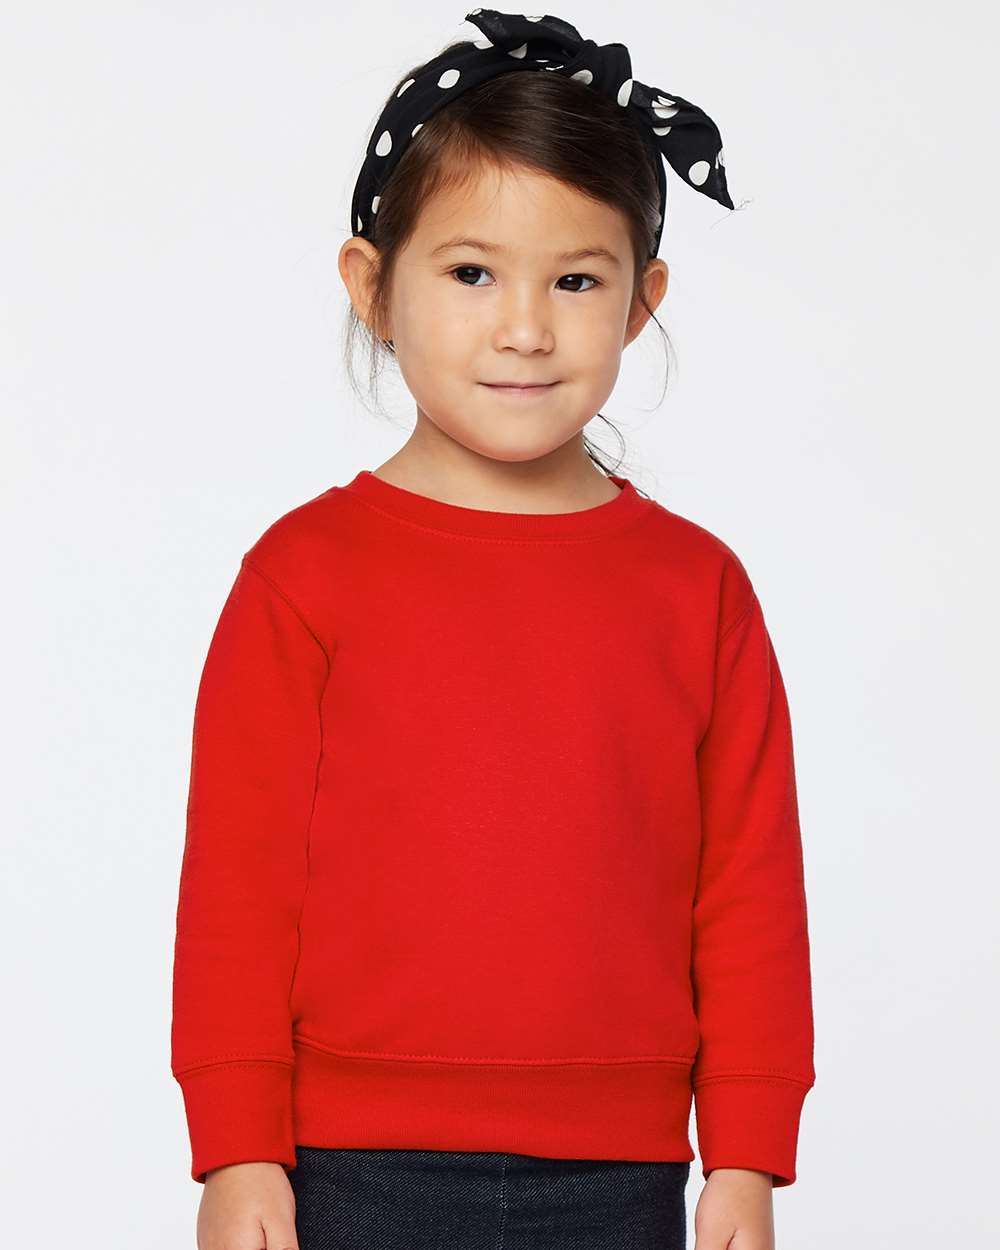 Rabbit Skins® Toddler Fleece Crewneck Sweatshirt